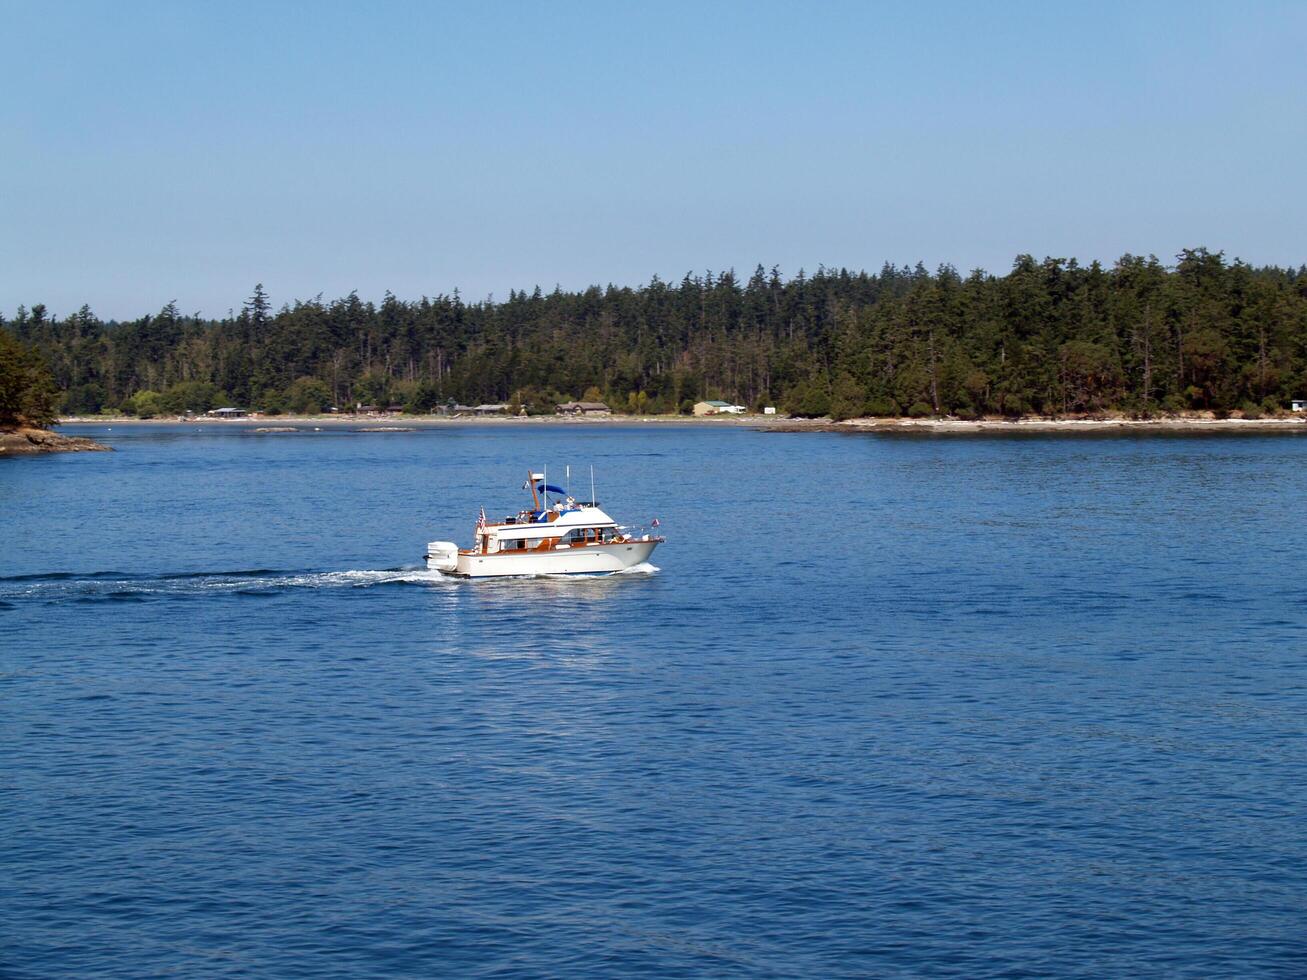 bétula baía, wa, 2006 - cabine motor cruzador barco em baía perto árvores foto